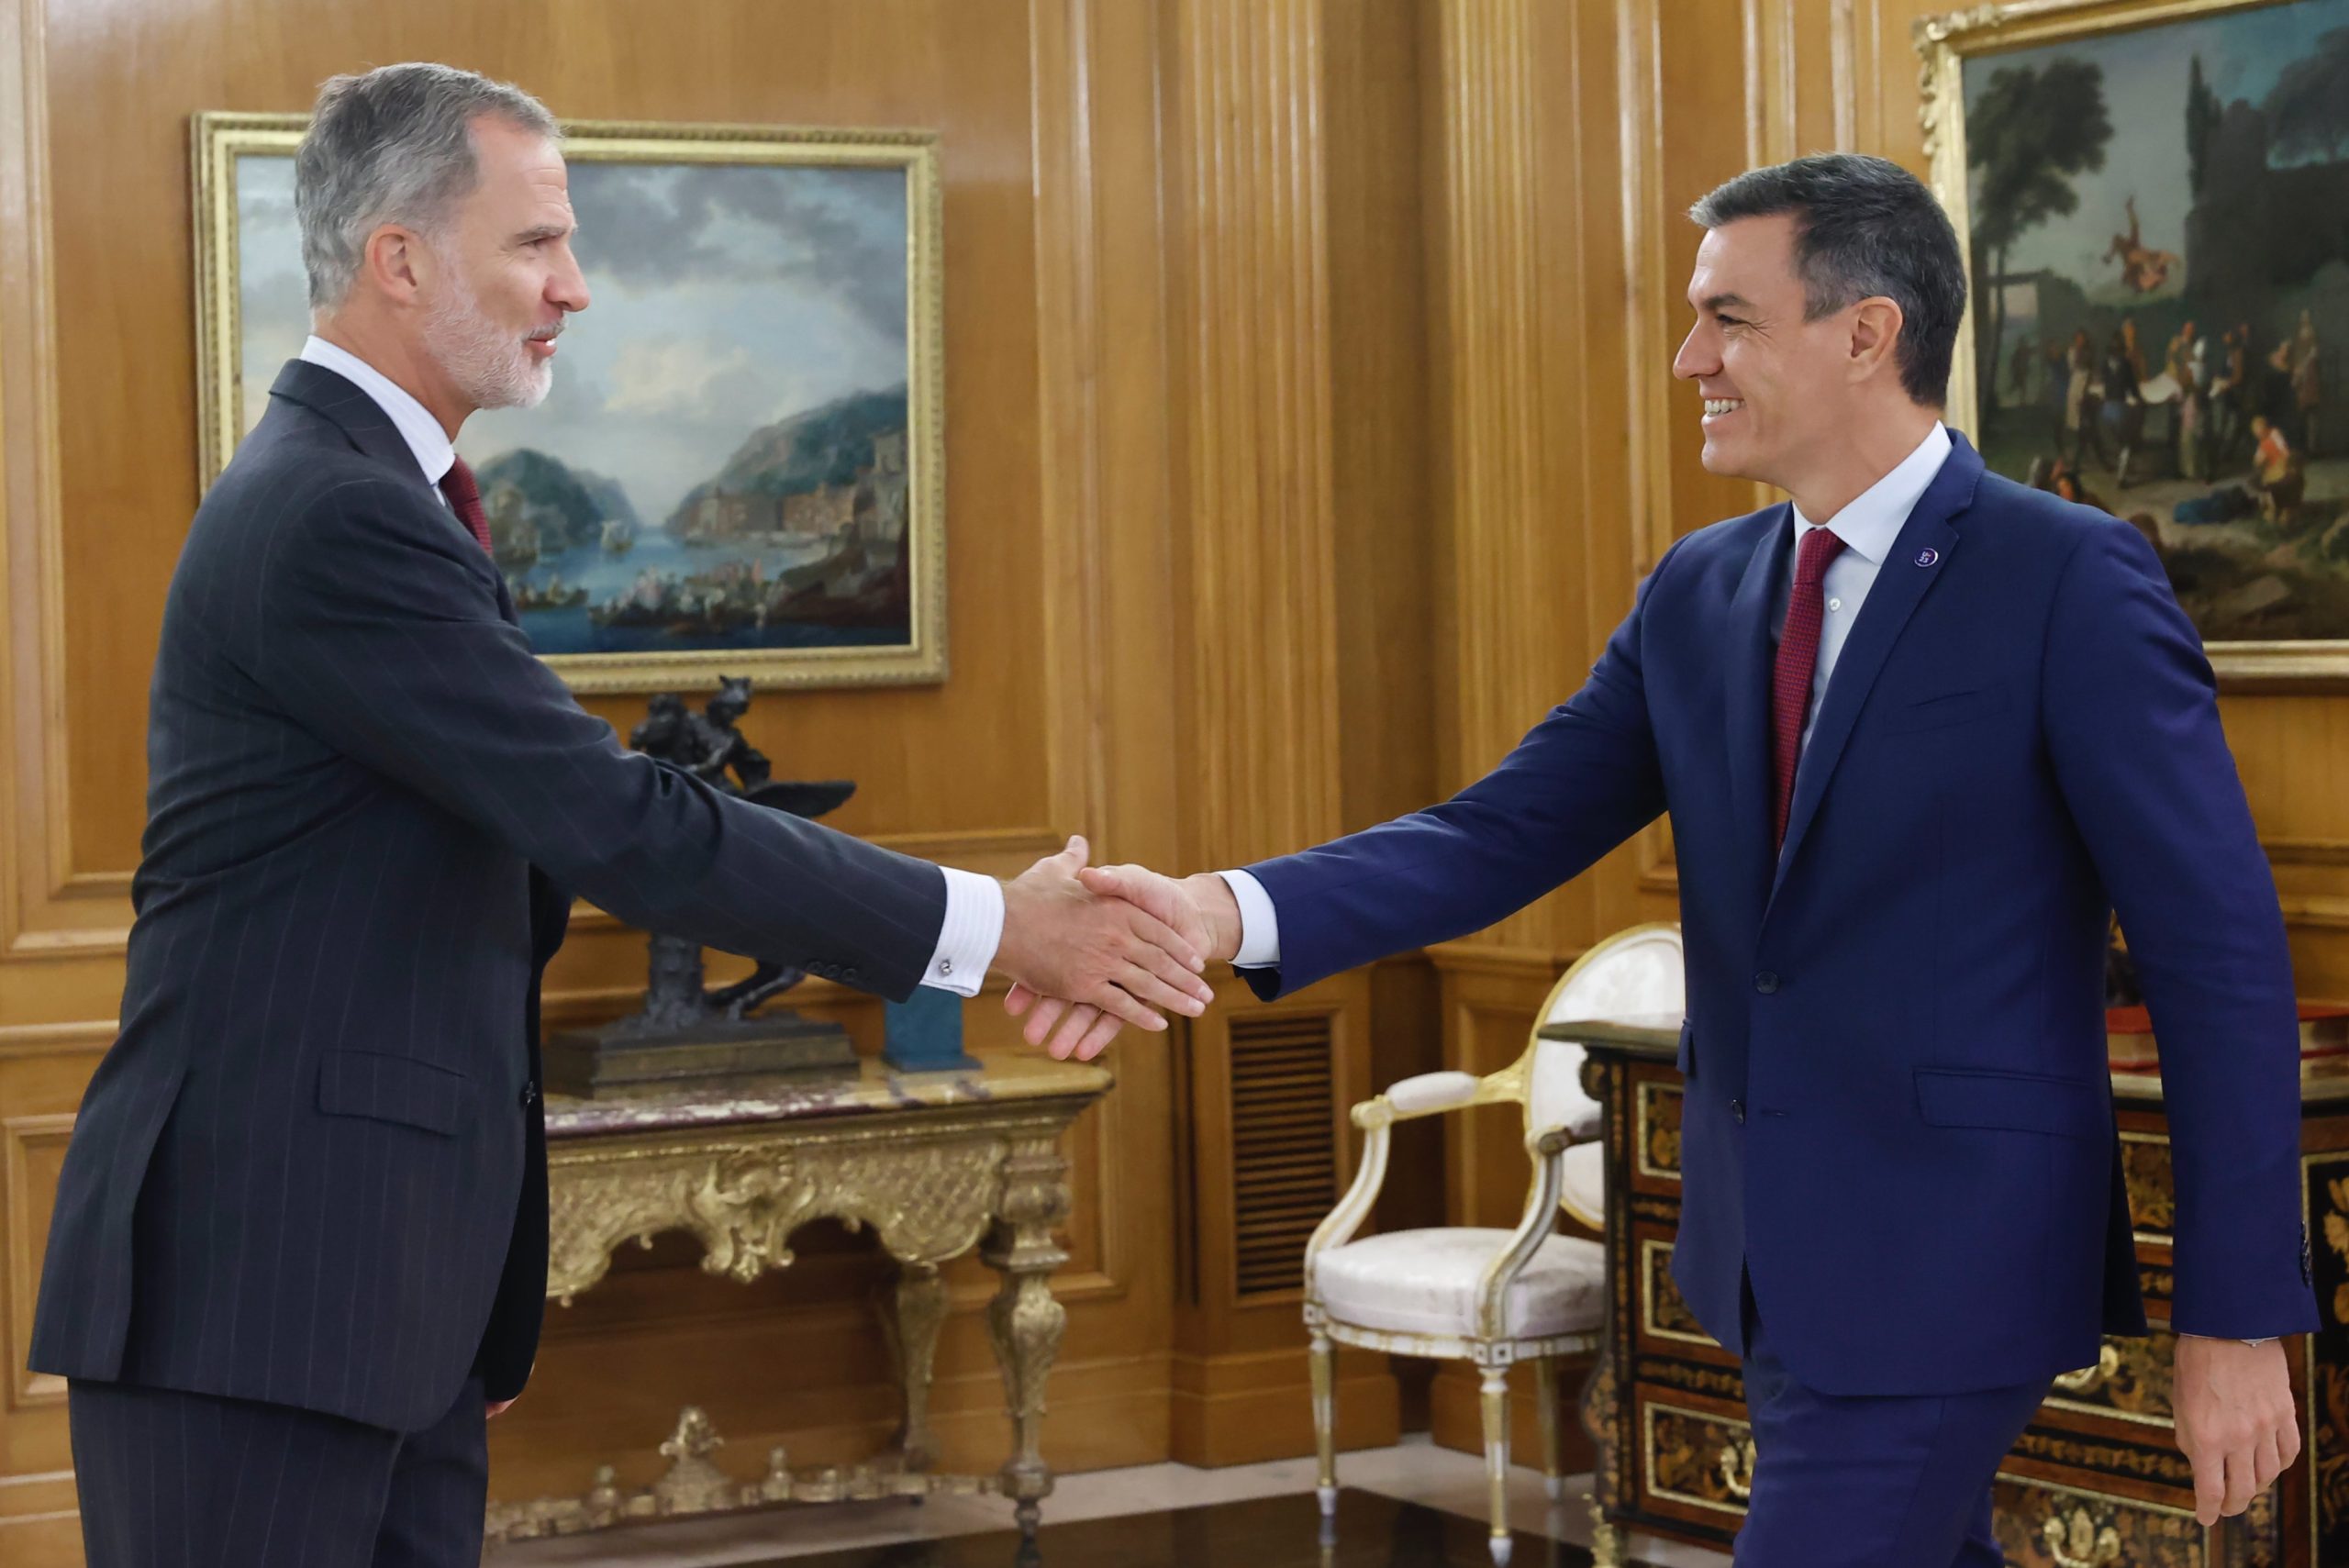 Rey de España instruye a Pedro Sánchez formar nuevo gobierno